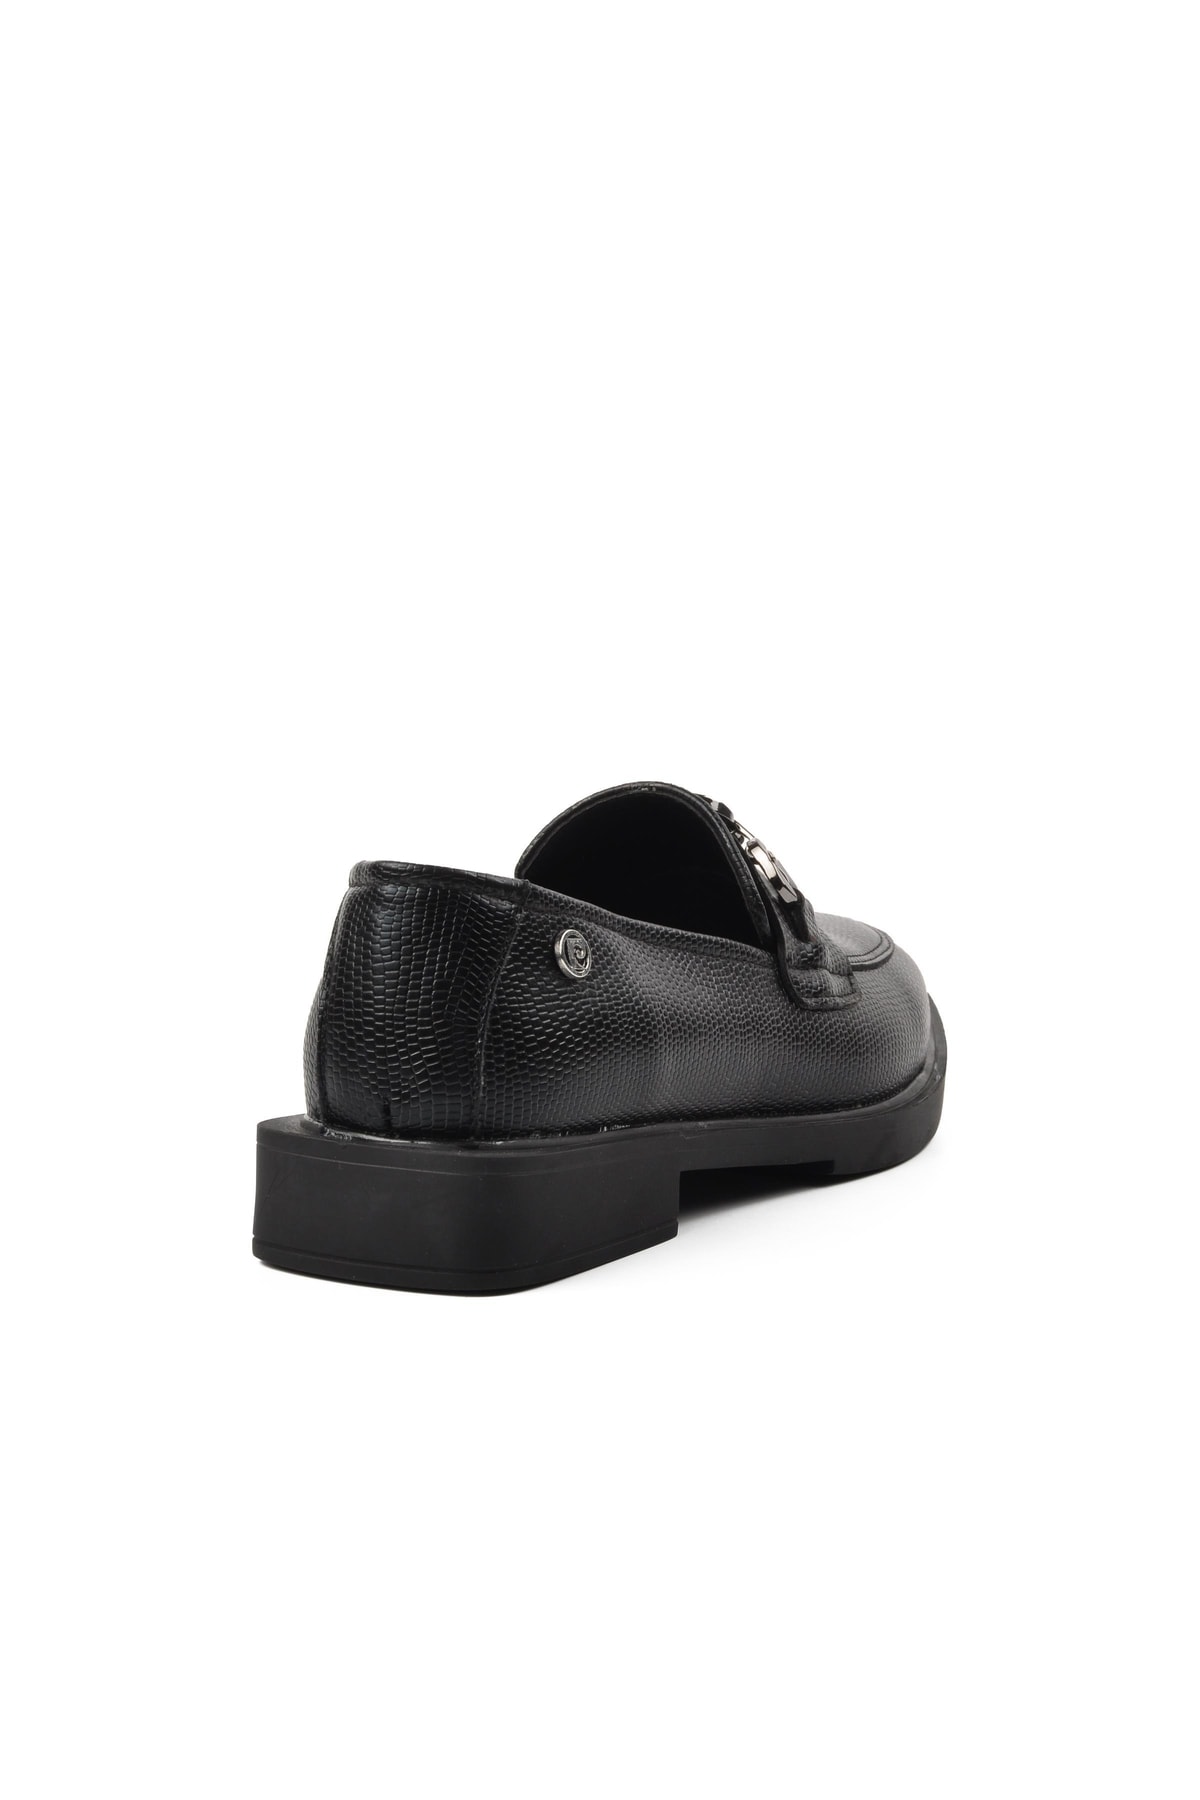 Pierre Cardin Siyah Kadın Günlük Ayakkabı VB7046